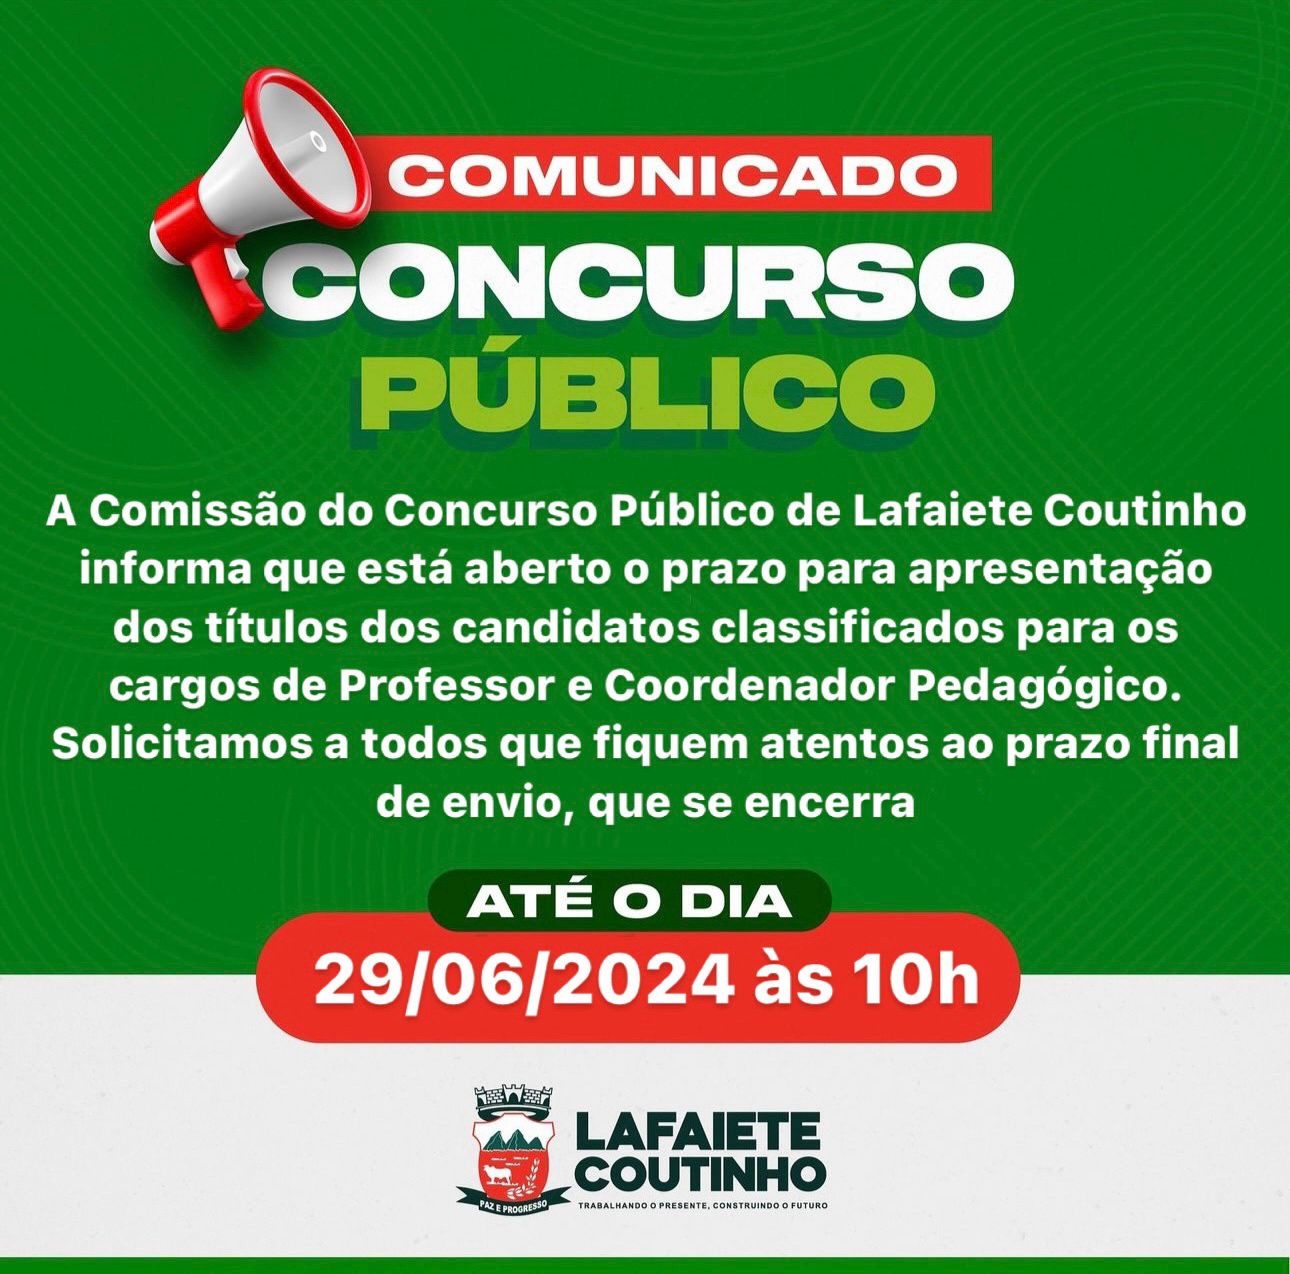 Lafaiete Coutinho: Prazo final para entrega de títulos do concurso público